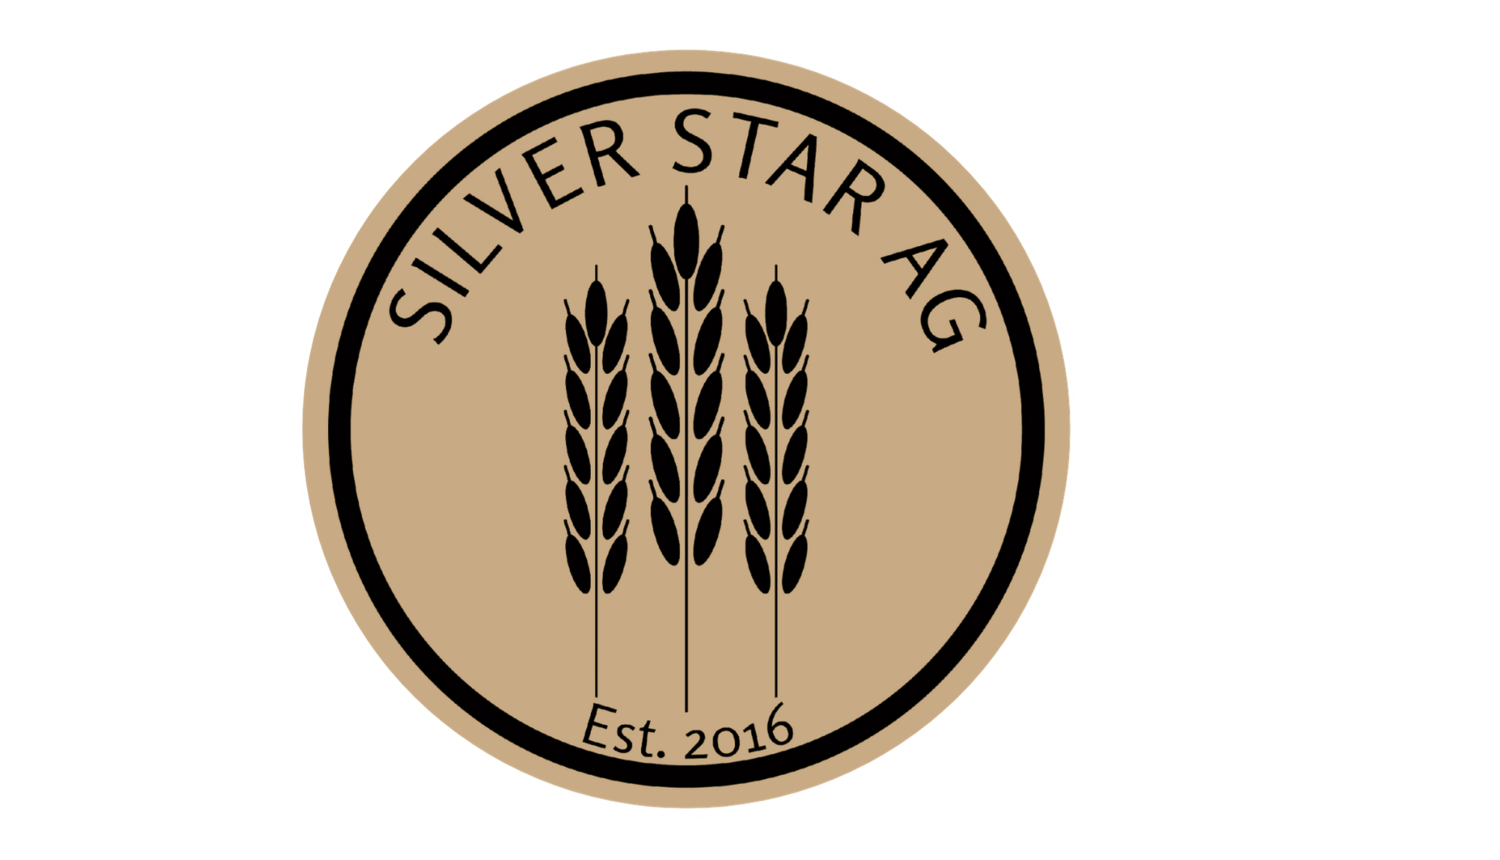 Silver Star Ag Ltd.